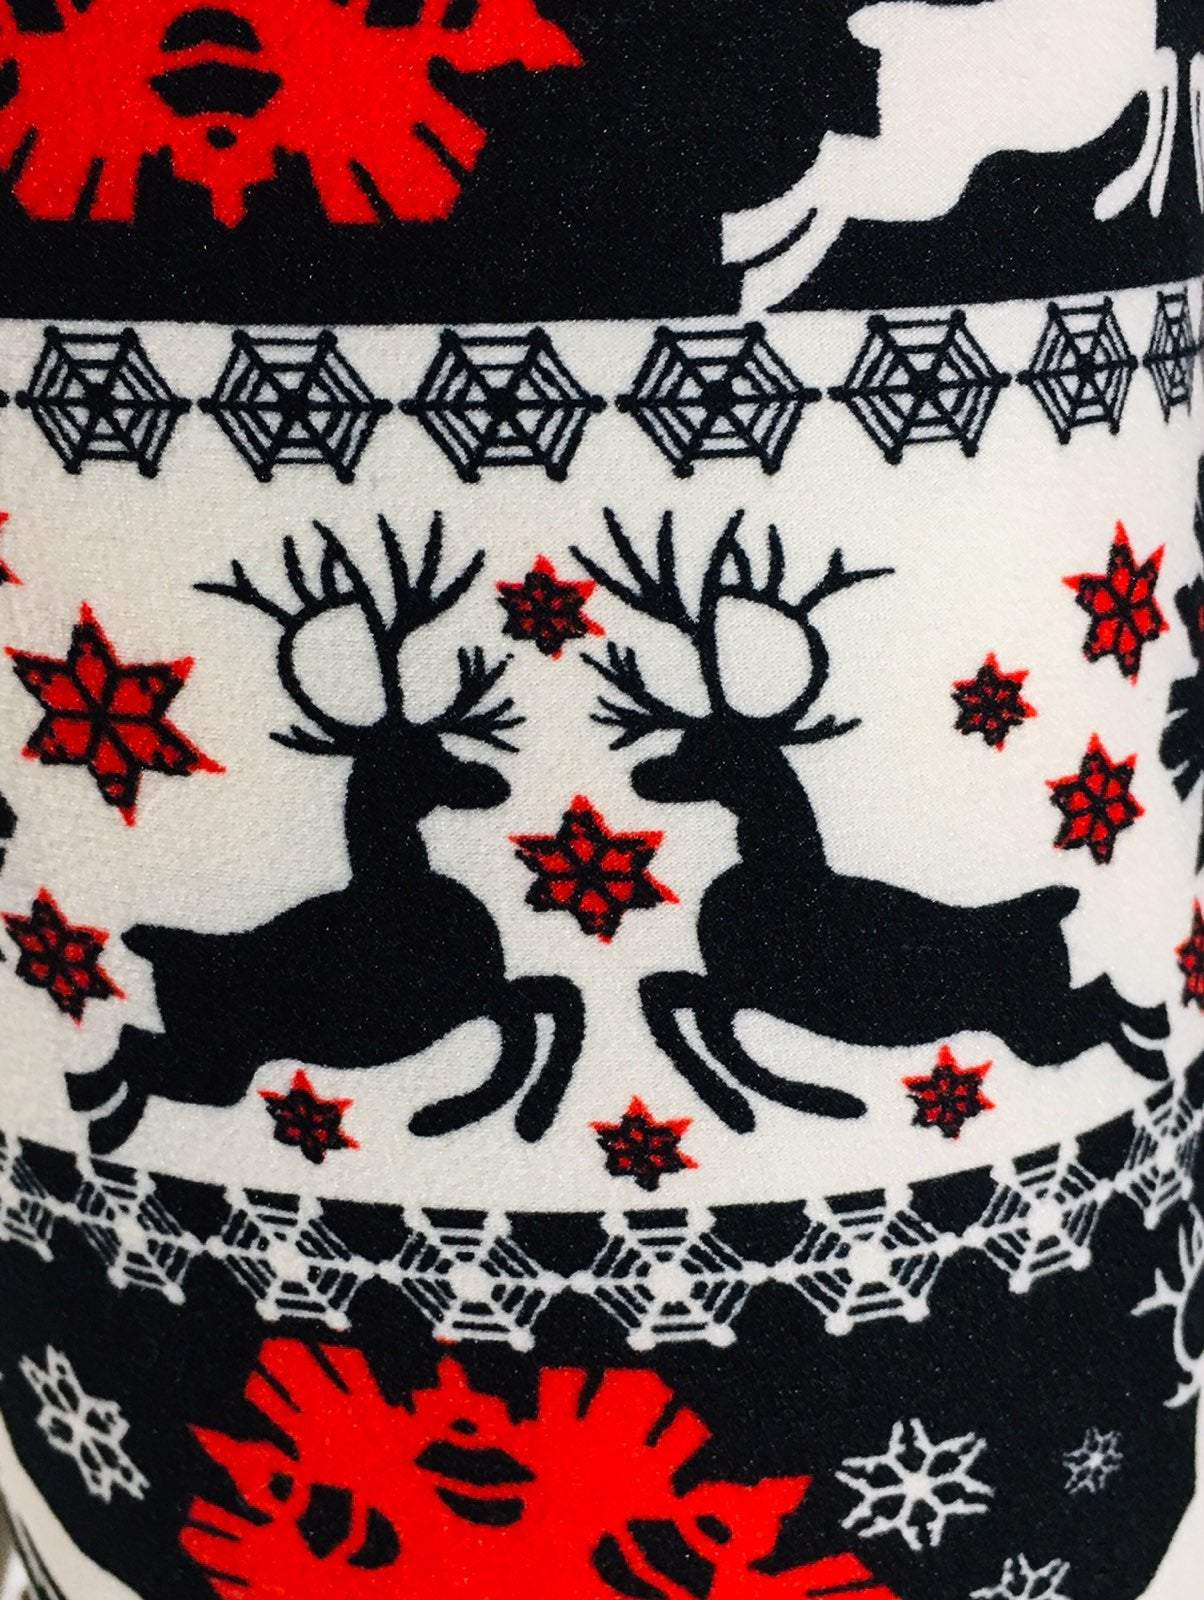 Plaid Bells, Snowflakes & Reindeer Christmas Leggings